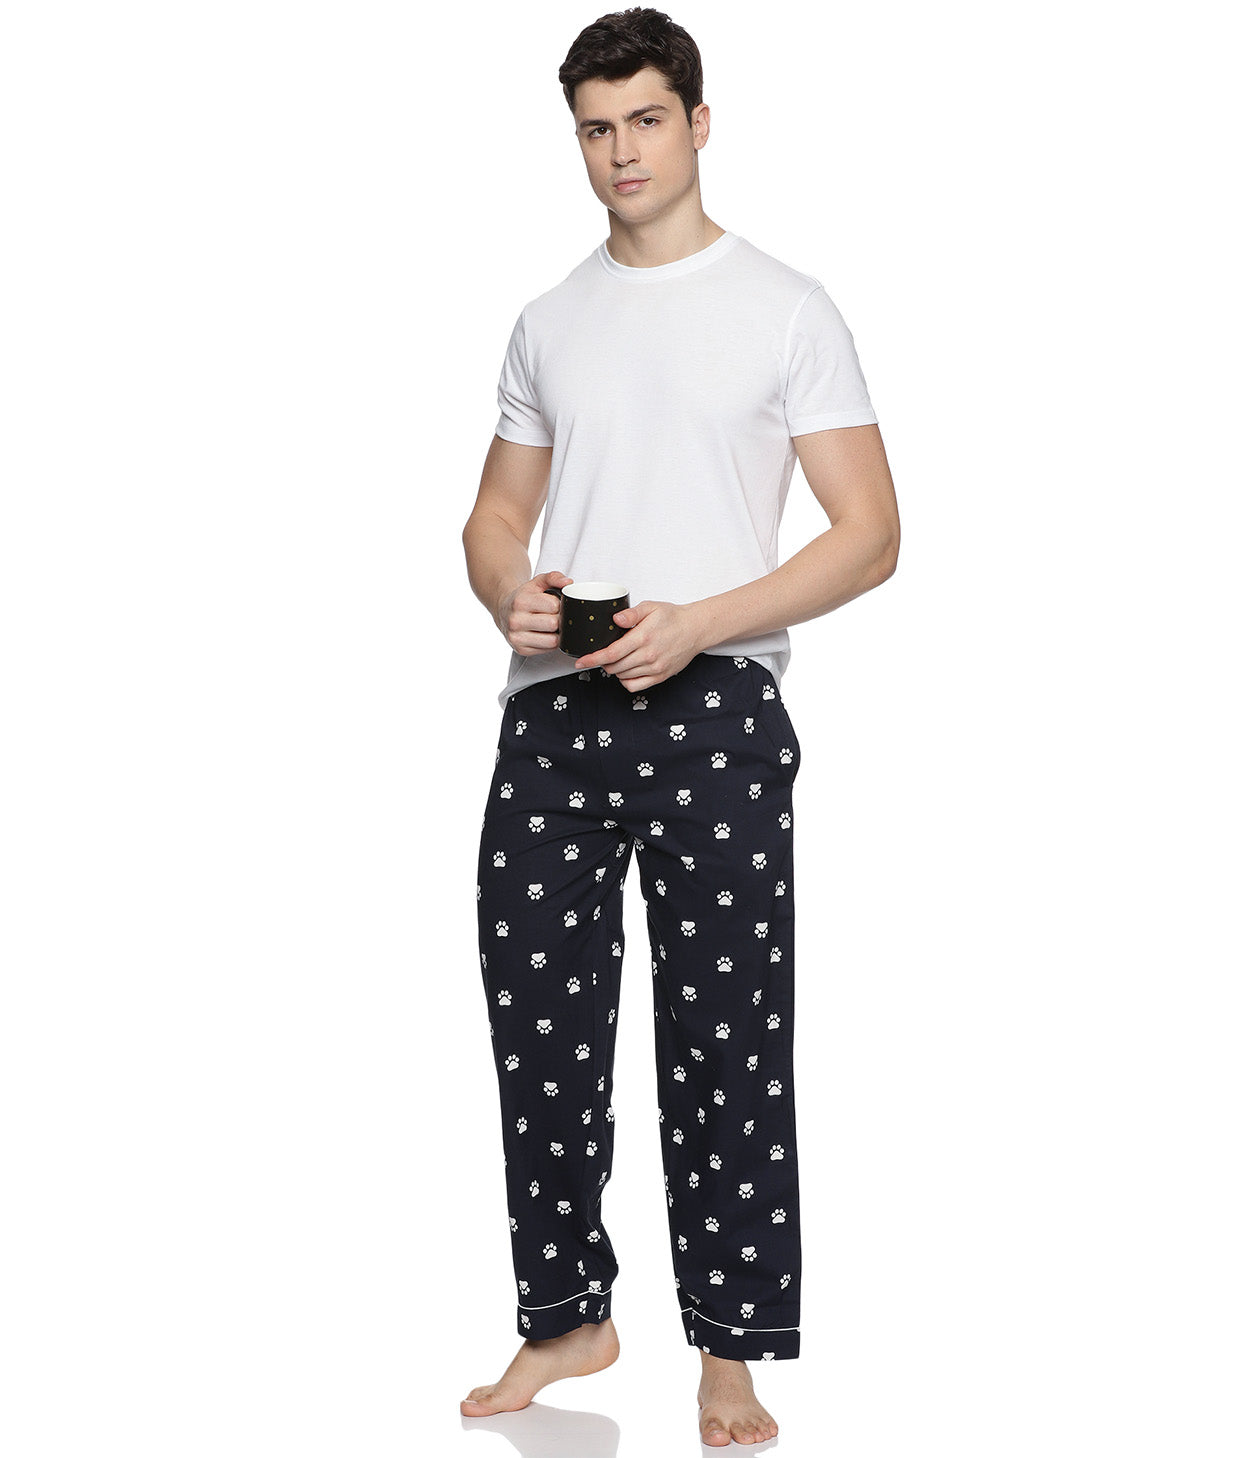 Paws Navy Printed Mens Pyjama